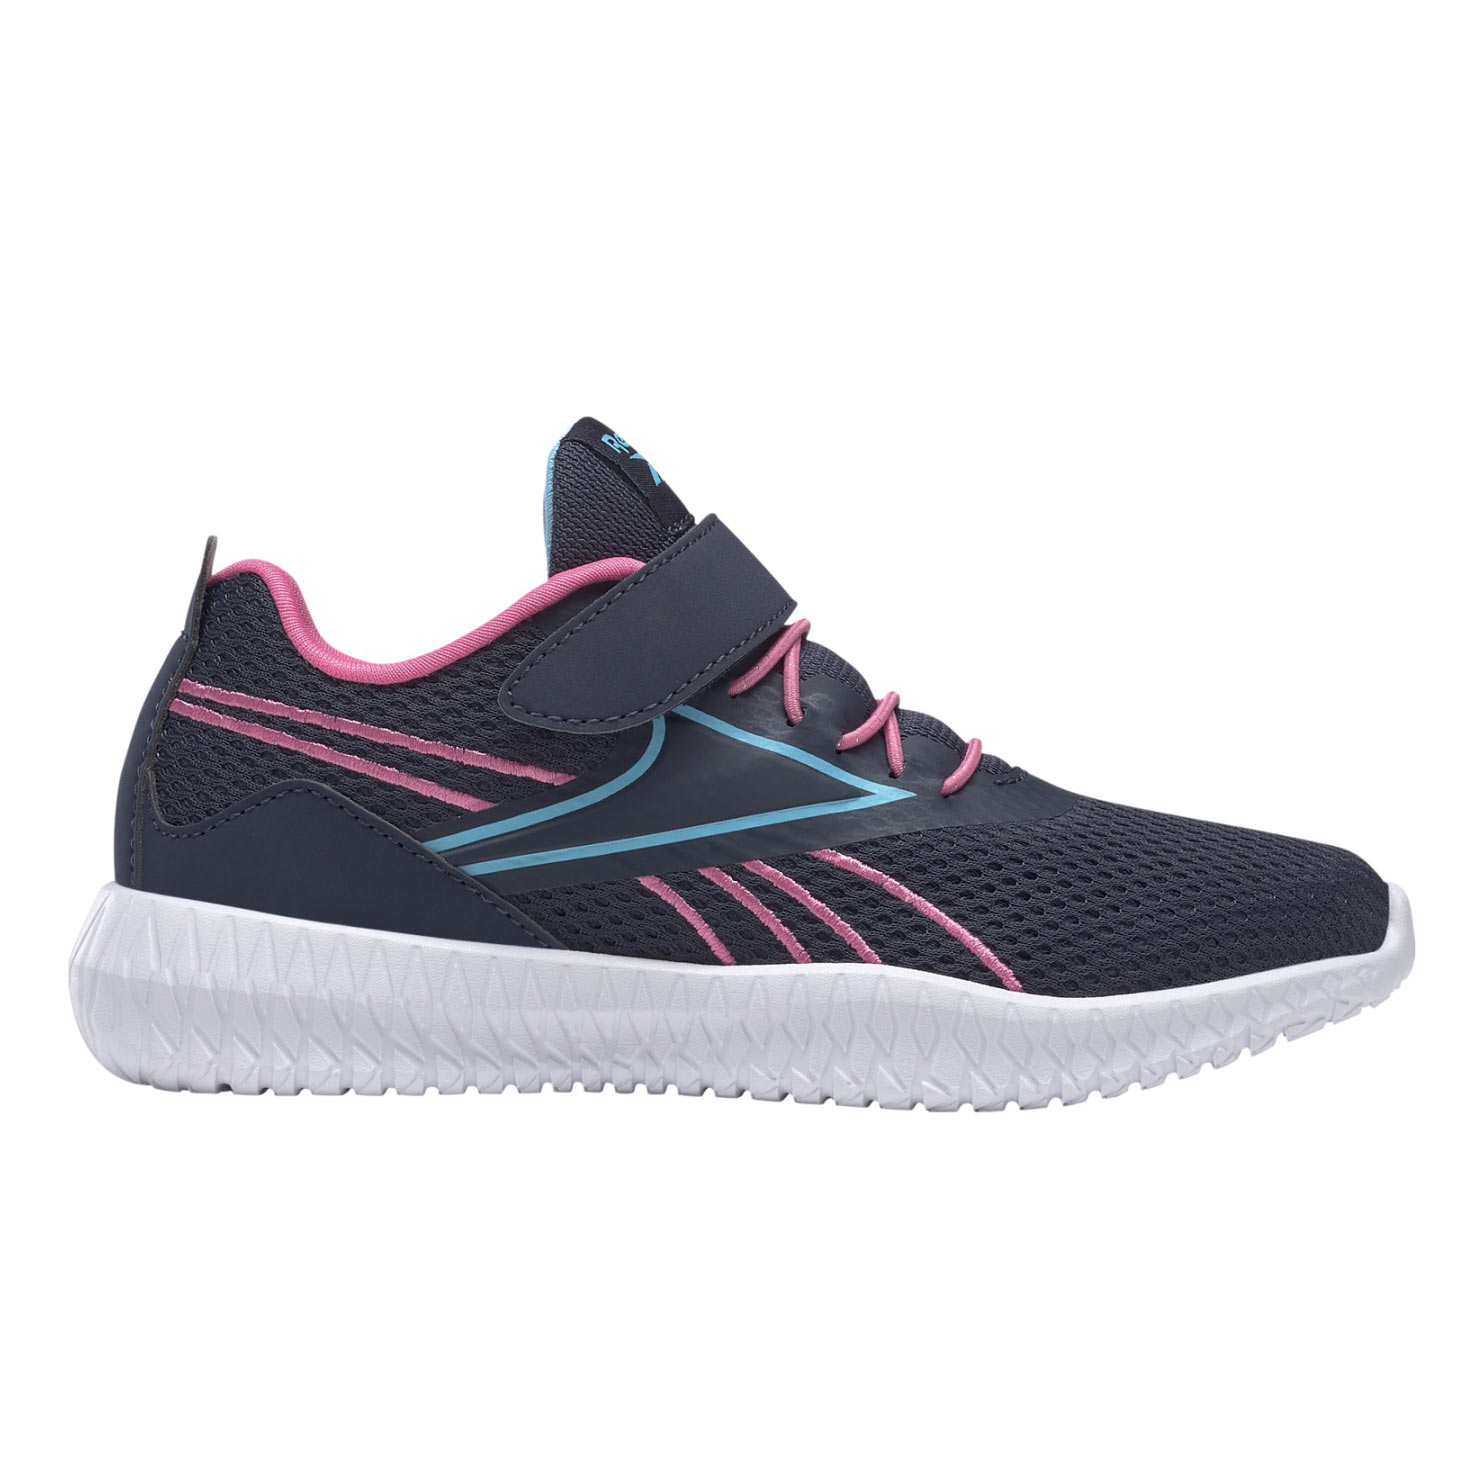 Bild von Reebok Flexagon Energy Kinder Sneaker mit Klettverschluss - vector navy/true pink/digital blue